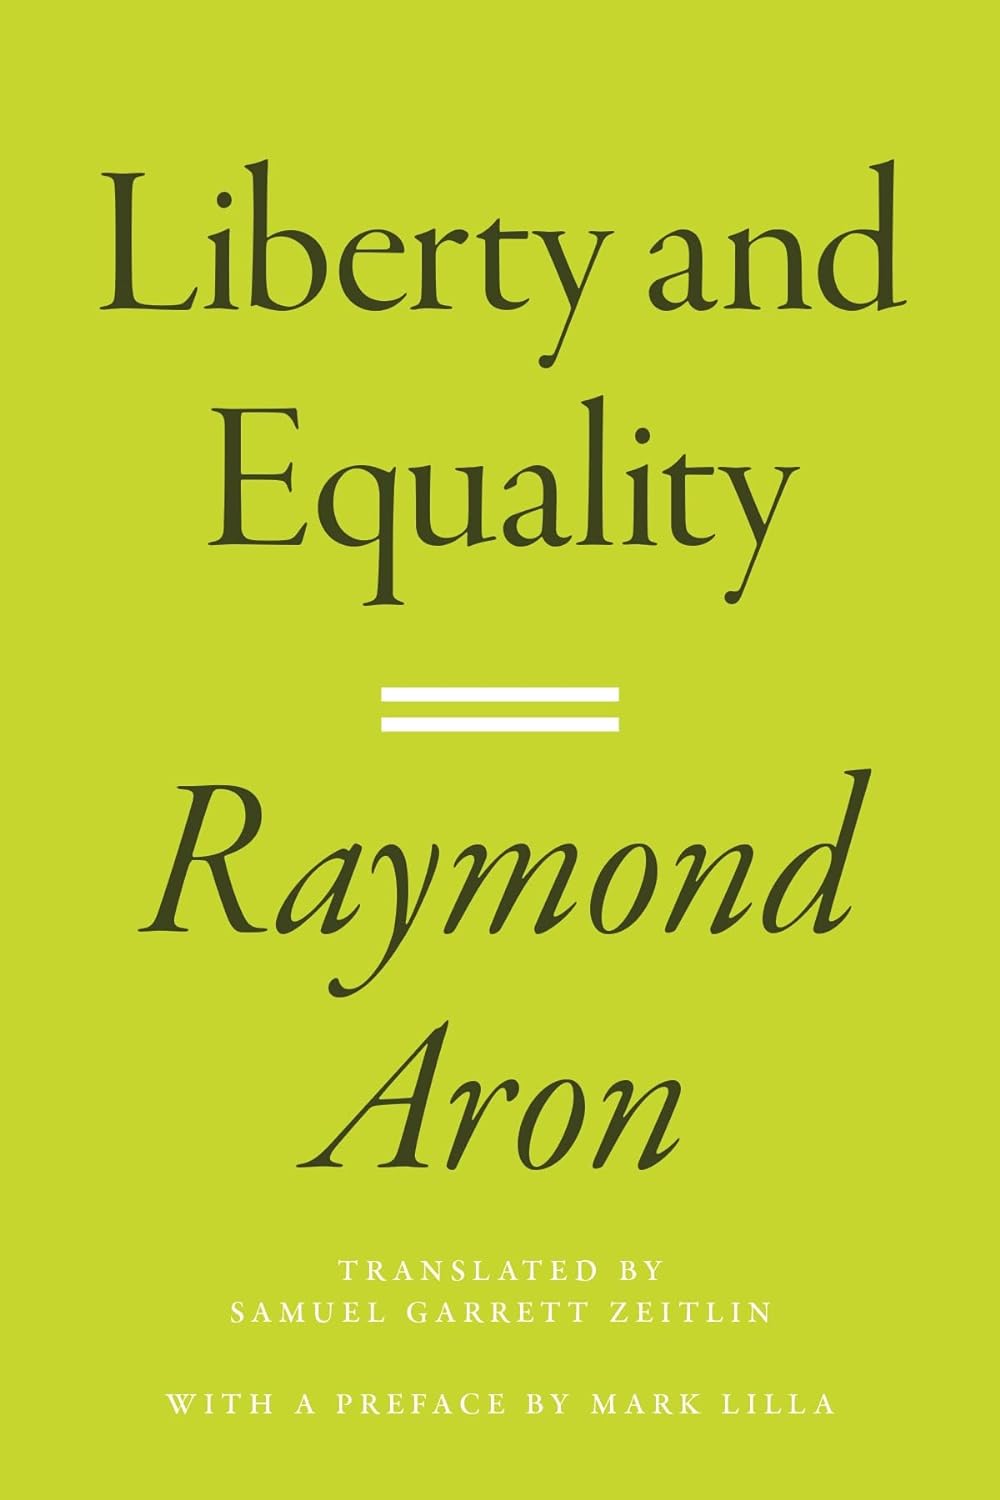 Raymond Aron_Liberty and Equality book cover